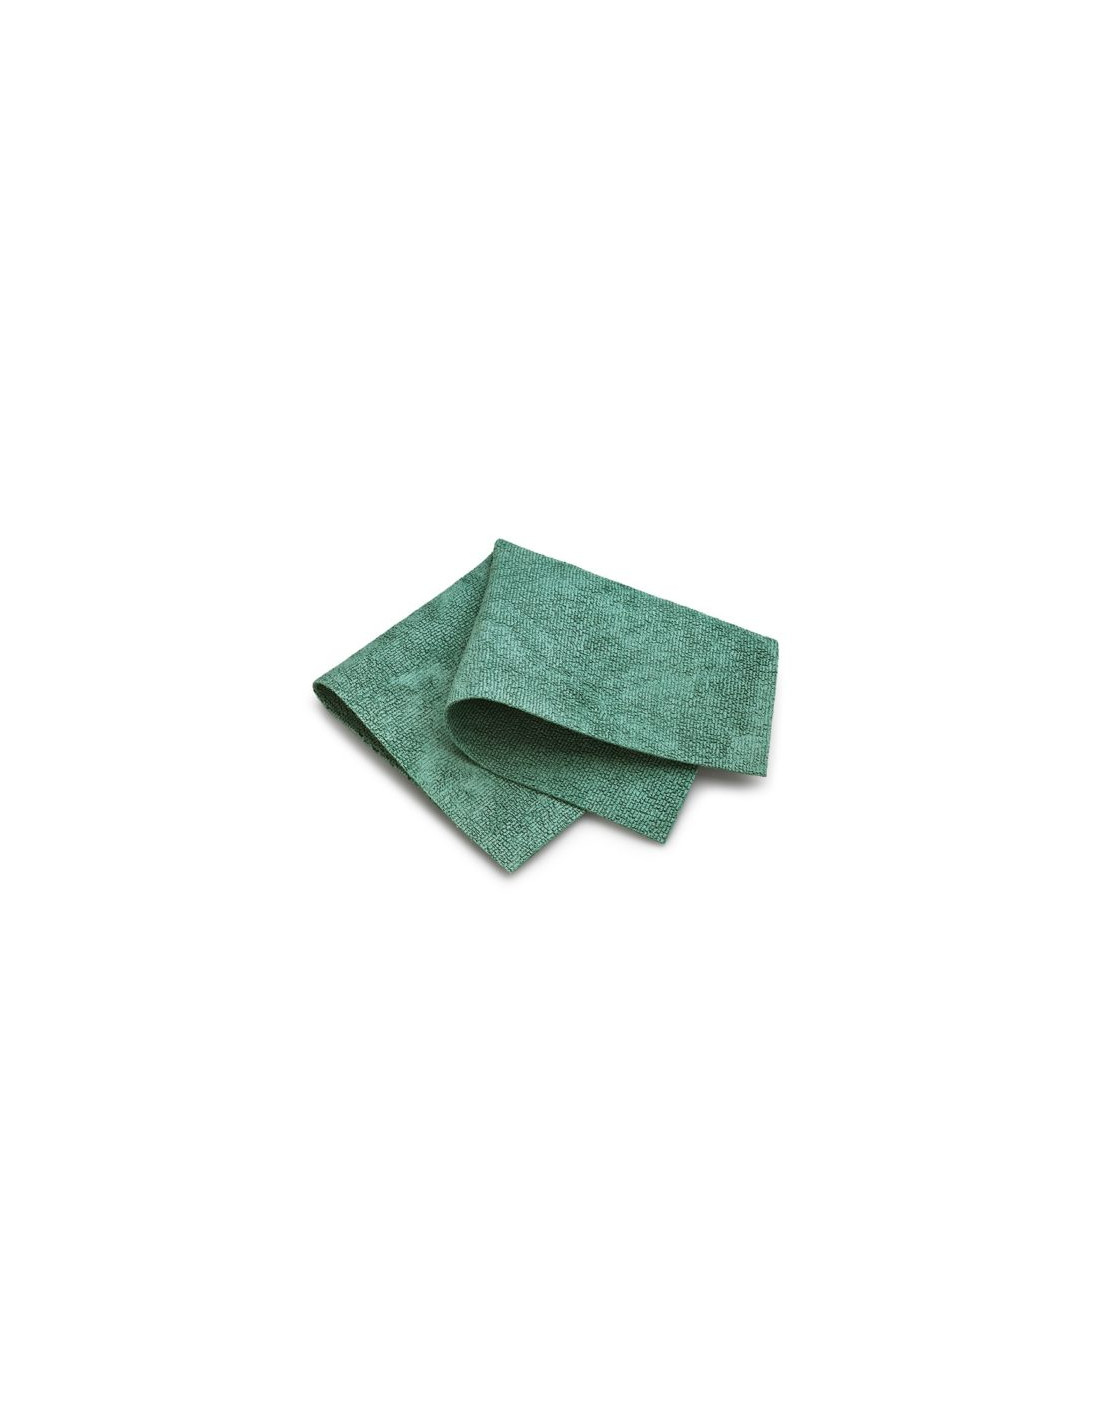 Panno Microfibra Acciaio Inox, Verdevero